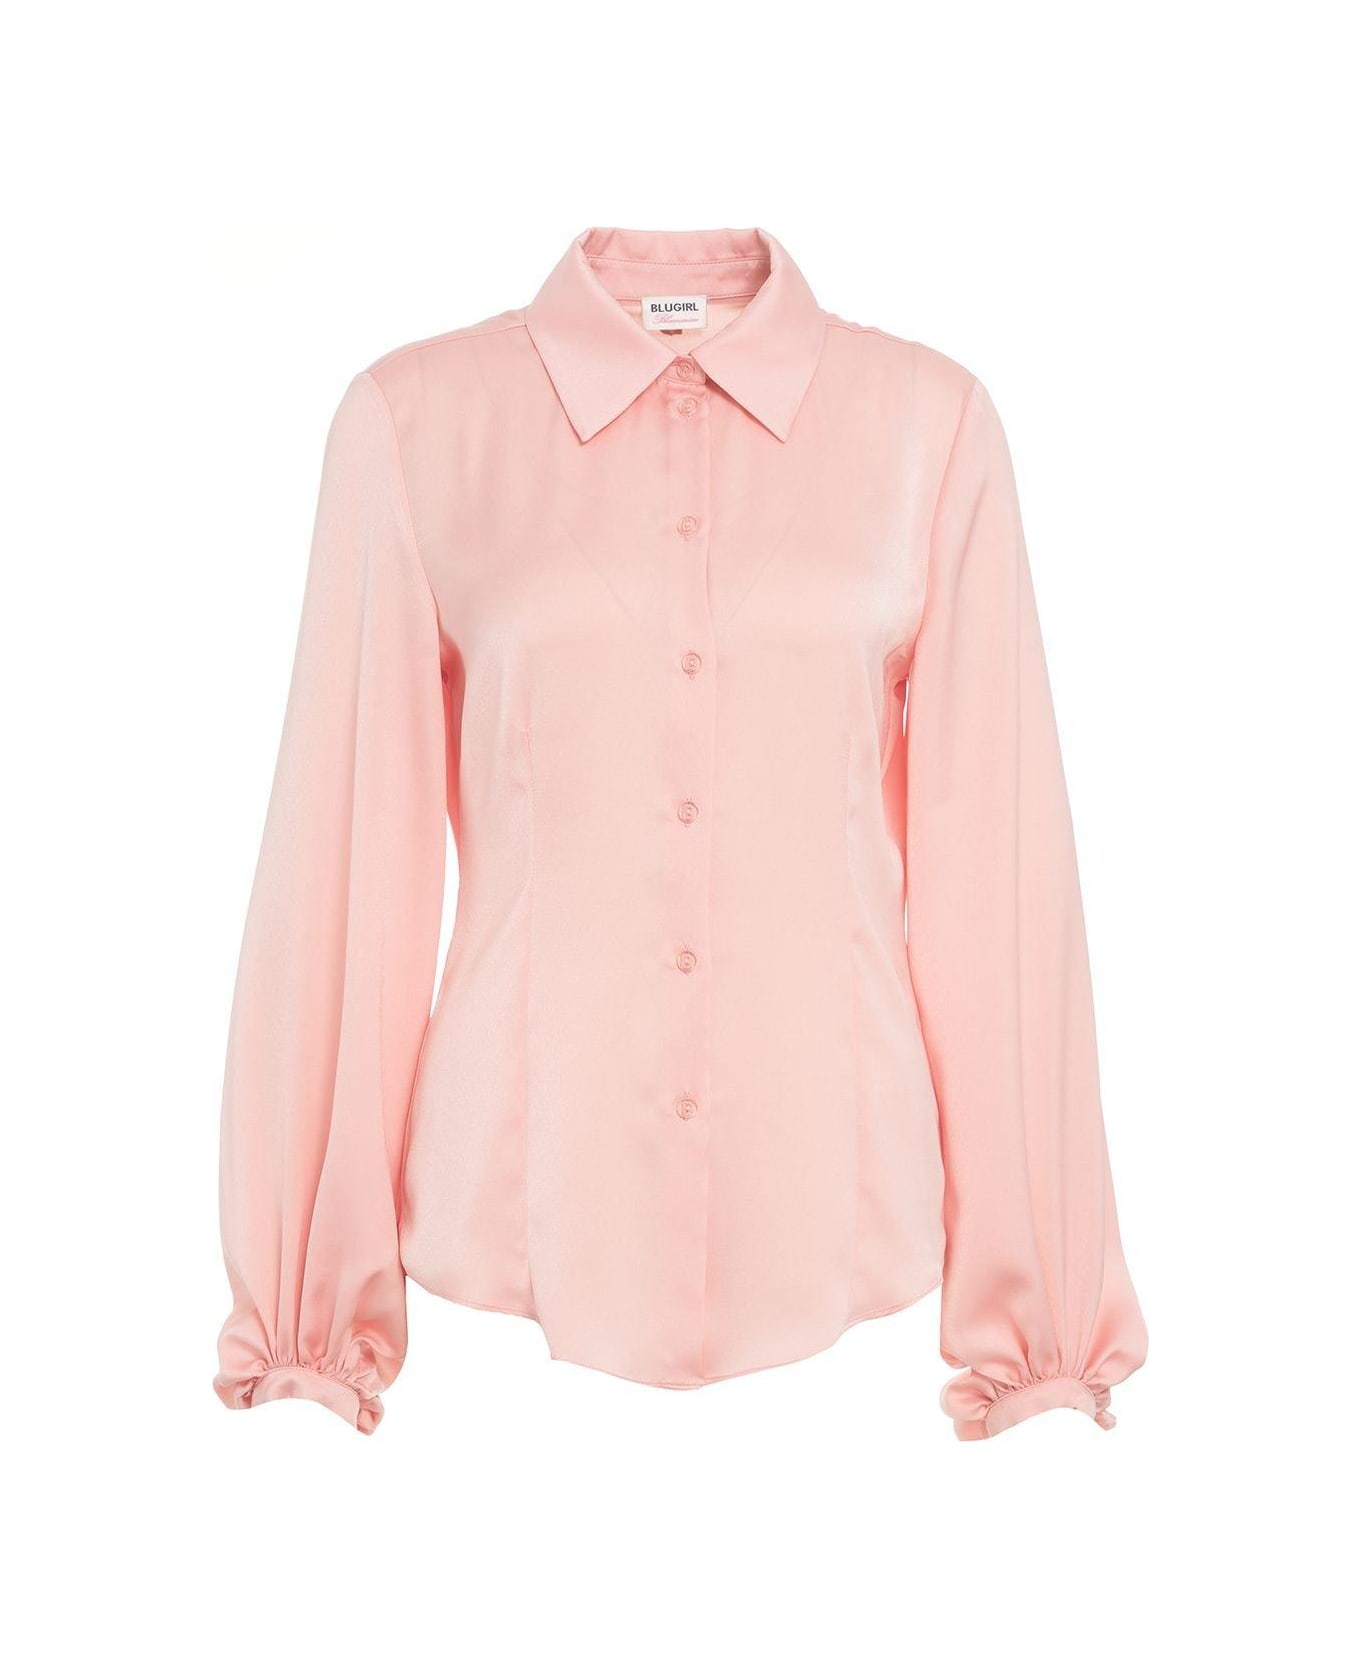 Blugirl Satin Button-up Shirt - Peach pearl シャツ